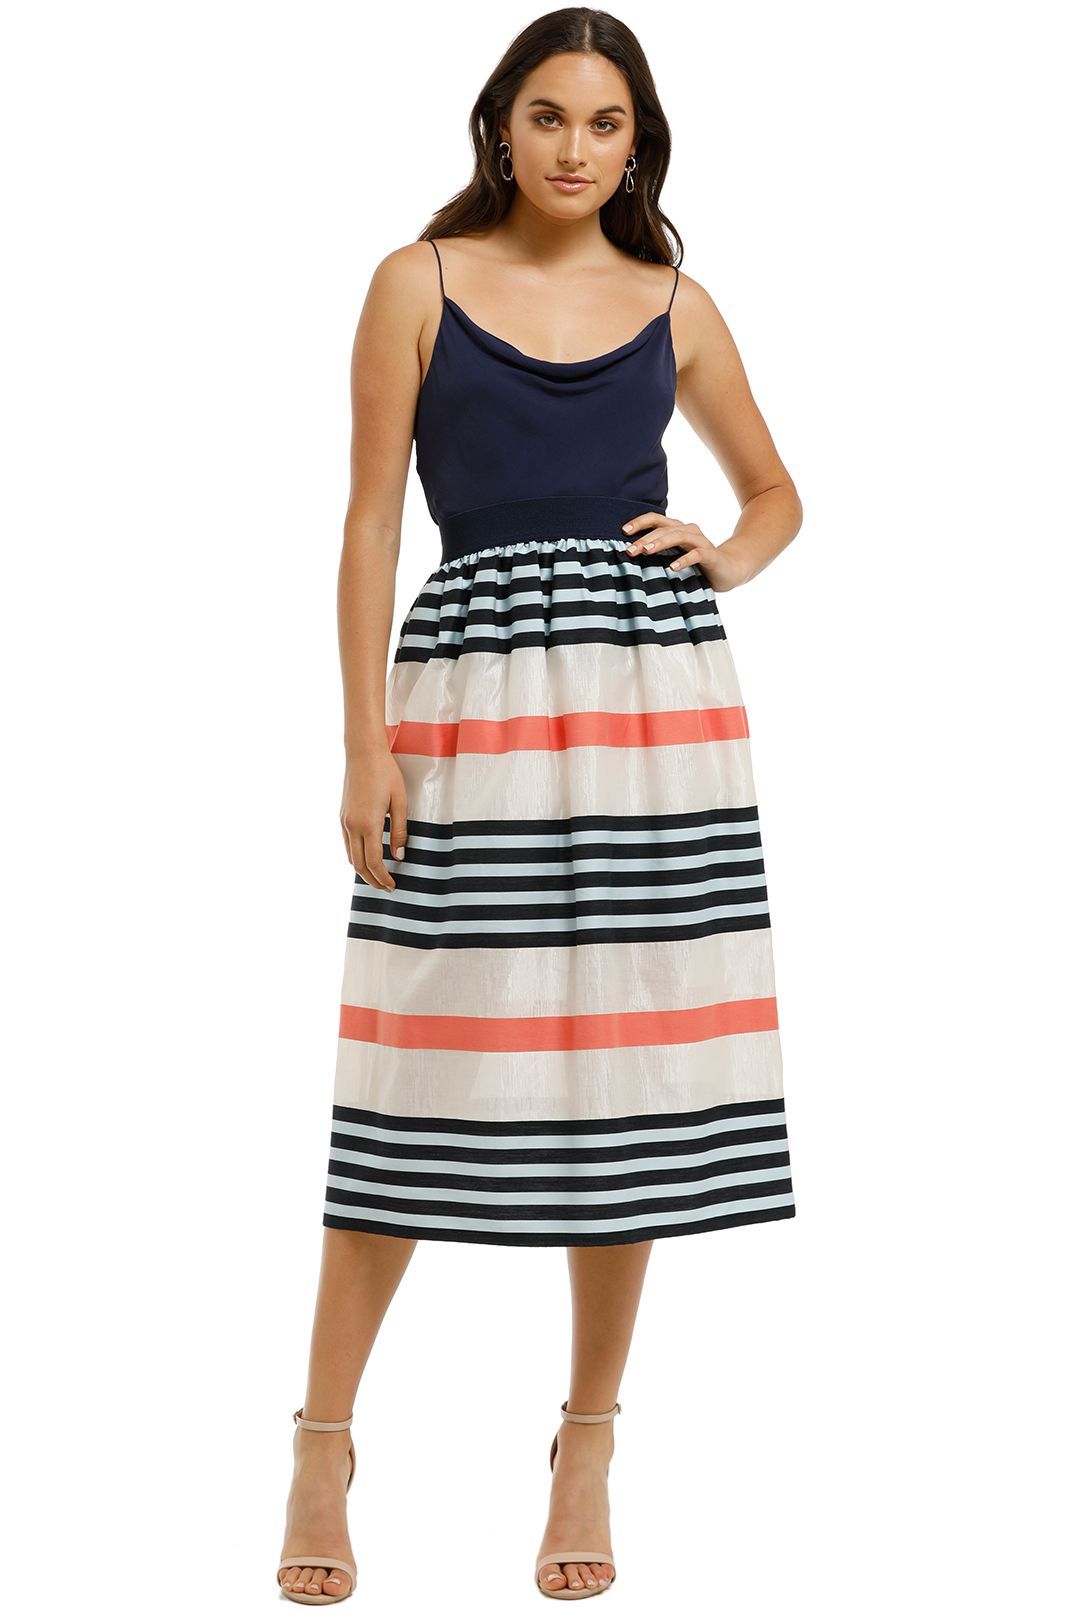 Cooper-By-Trelise-Cooper-Skirt-A-Holic-Skirt-Multi-Stripe-Front